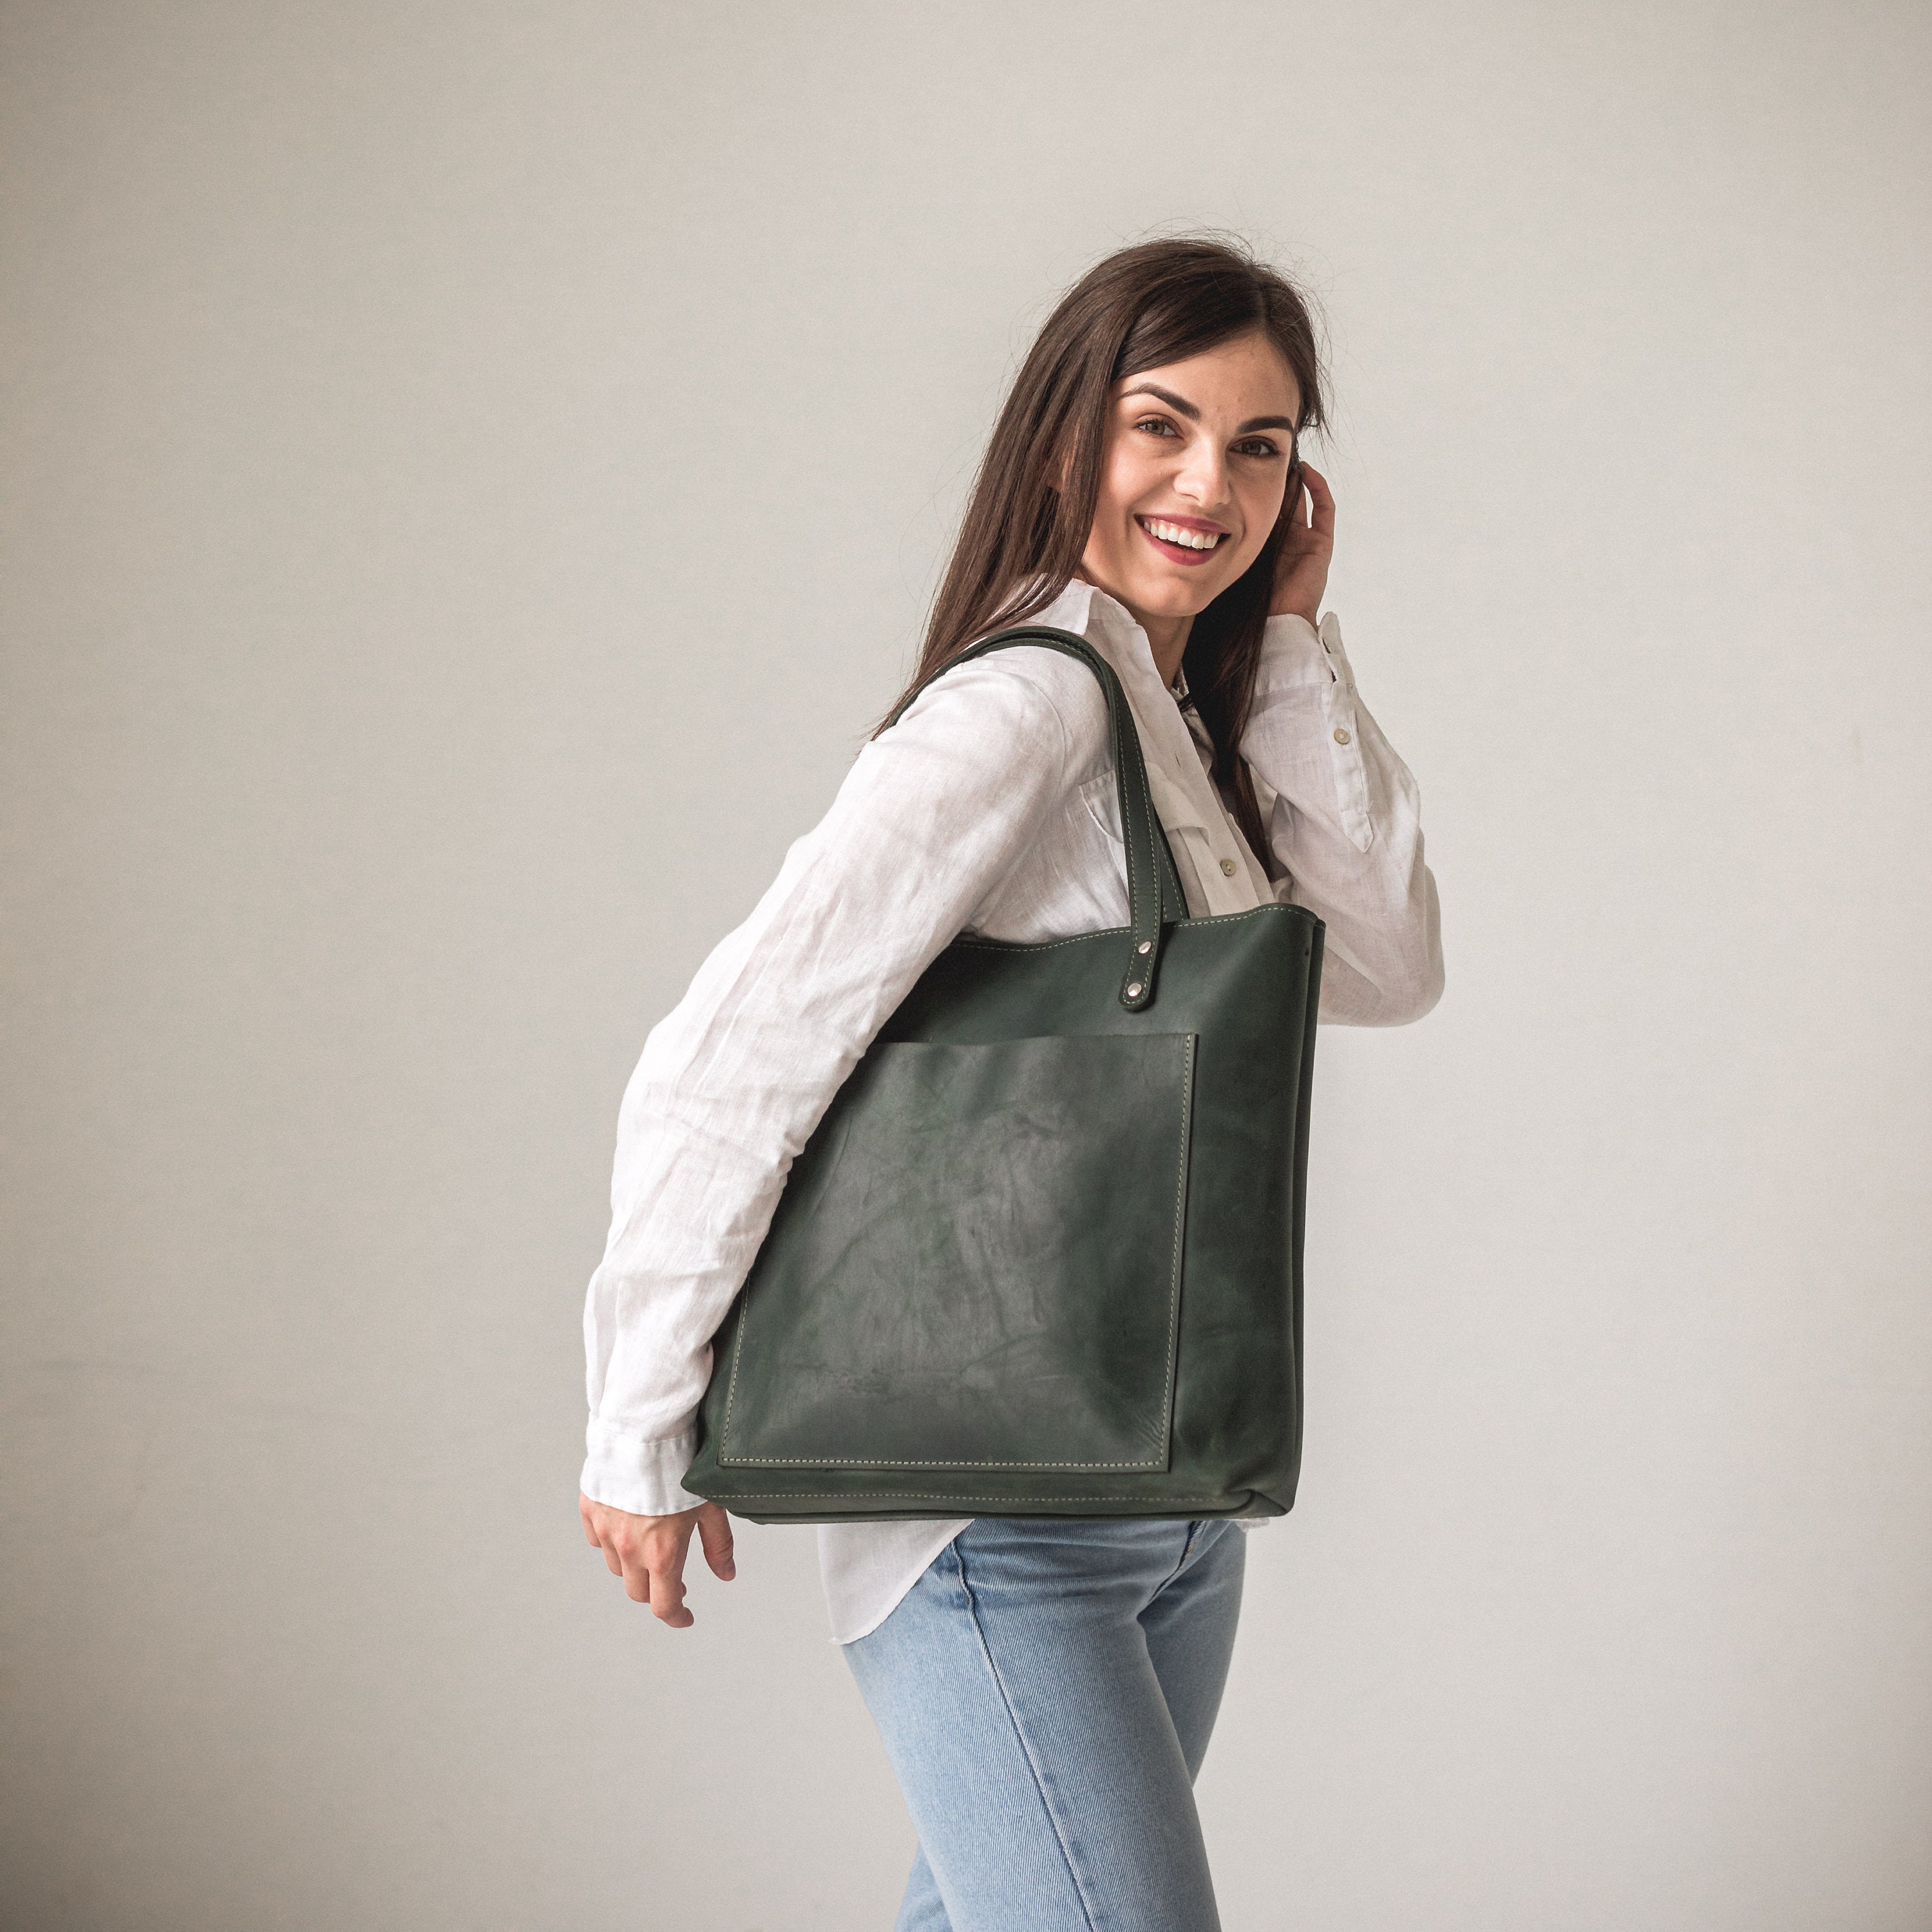 Leather Tote Bag for Women Large With Zipper Pocket Handmade Brown Tote  With Shoulder Strap Shoulder Bag Crossbody Messenger Handbag Handles 